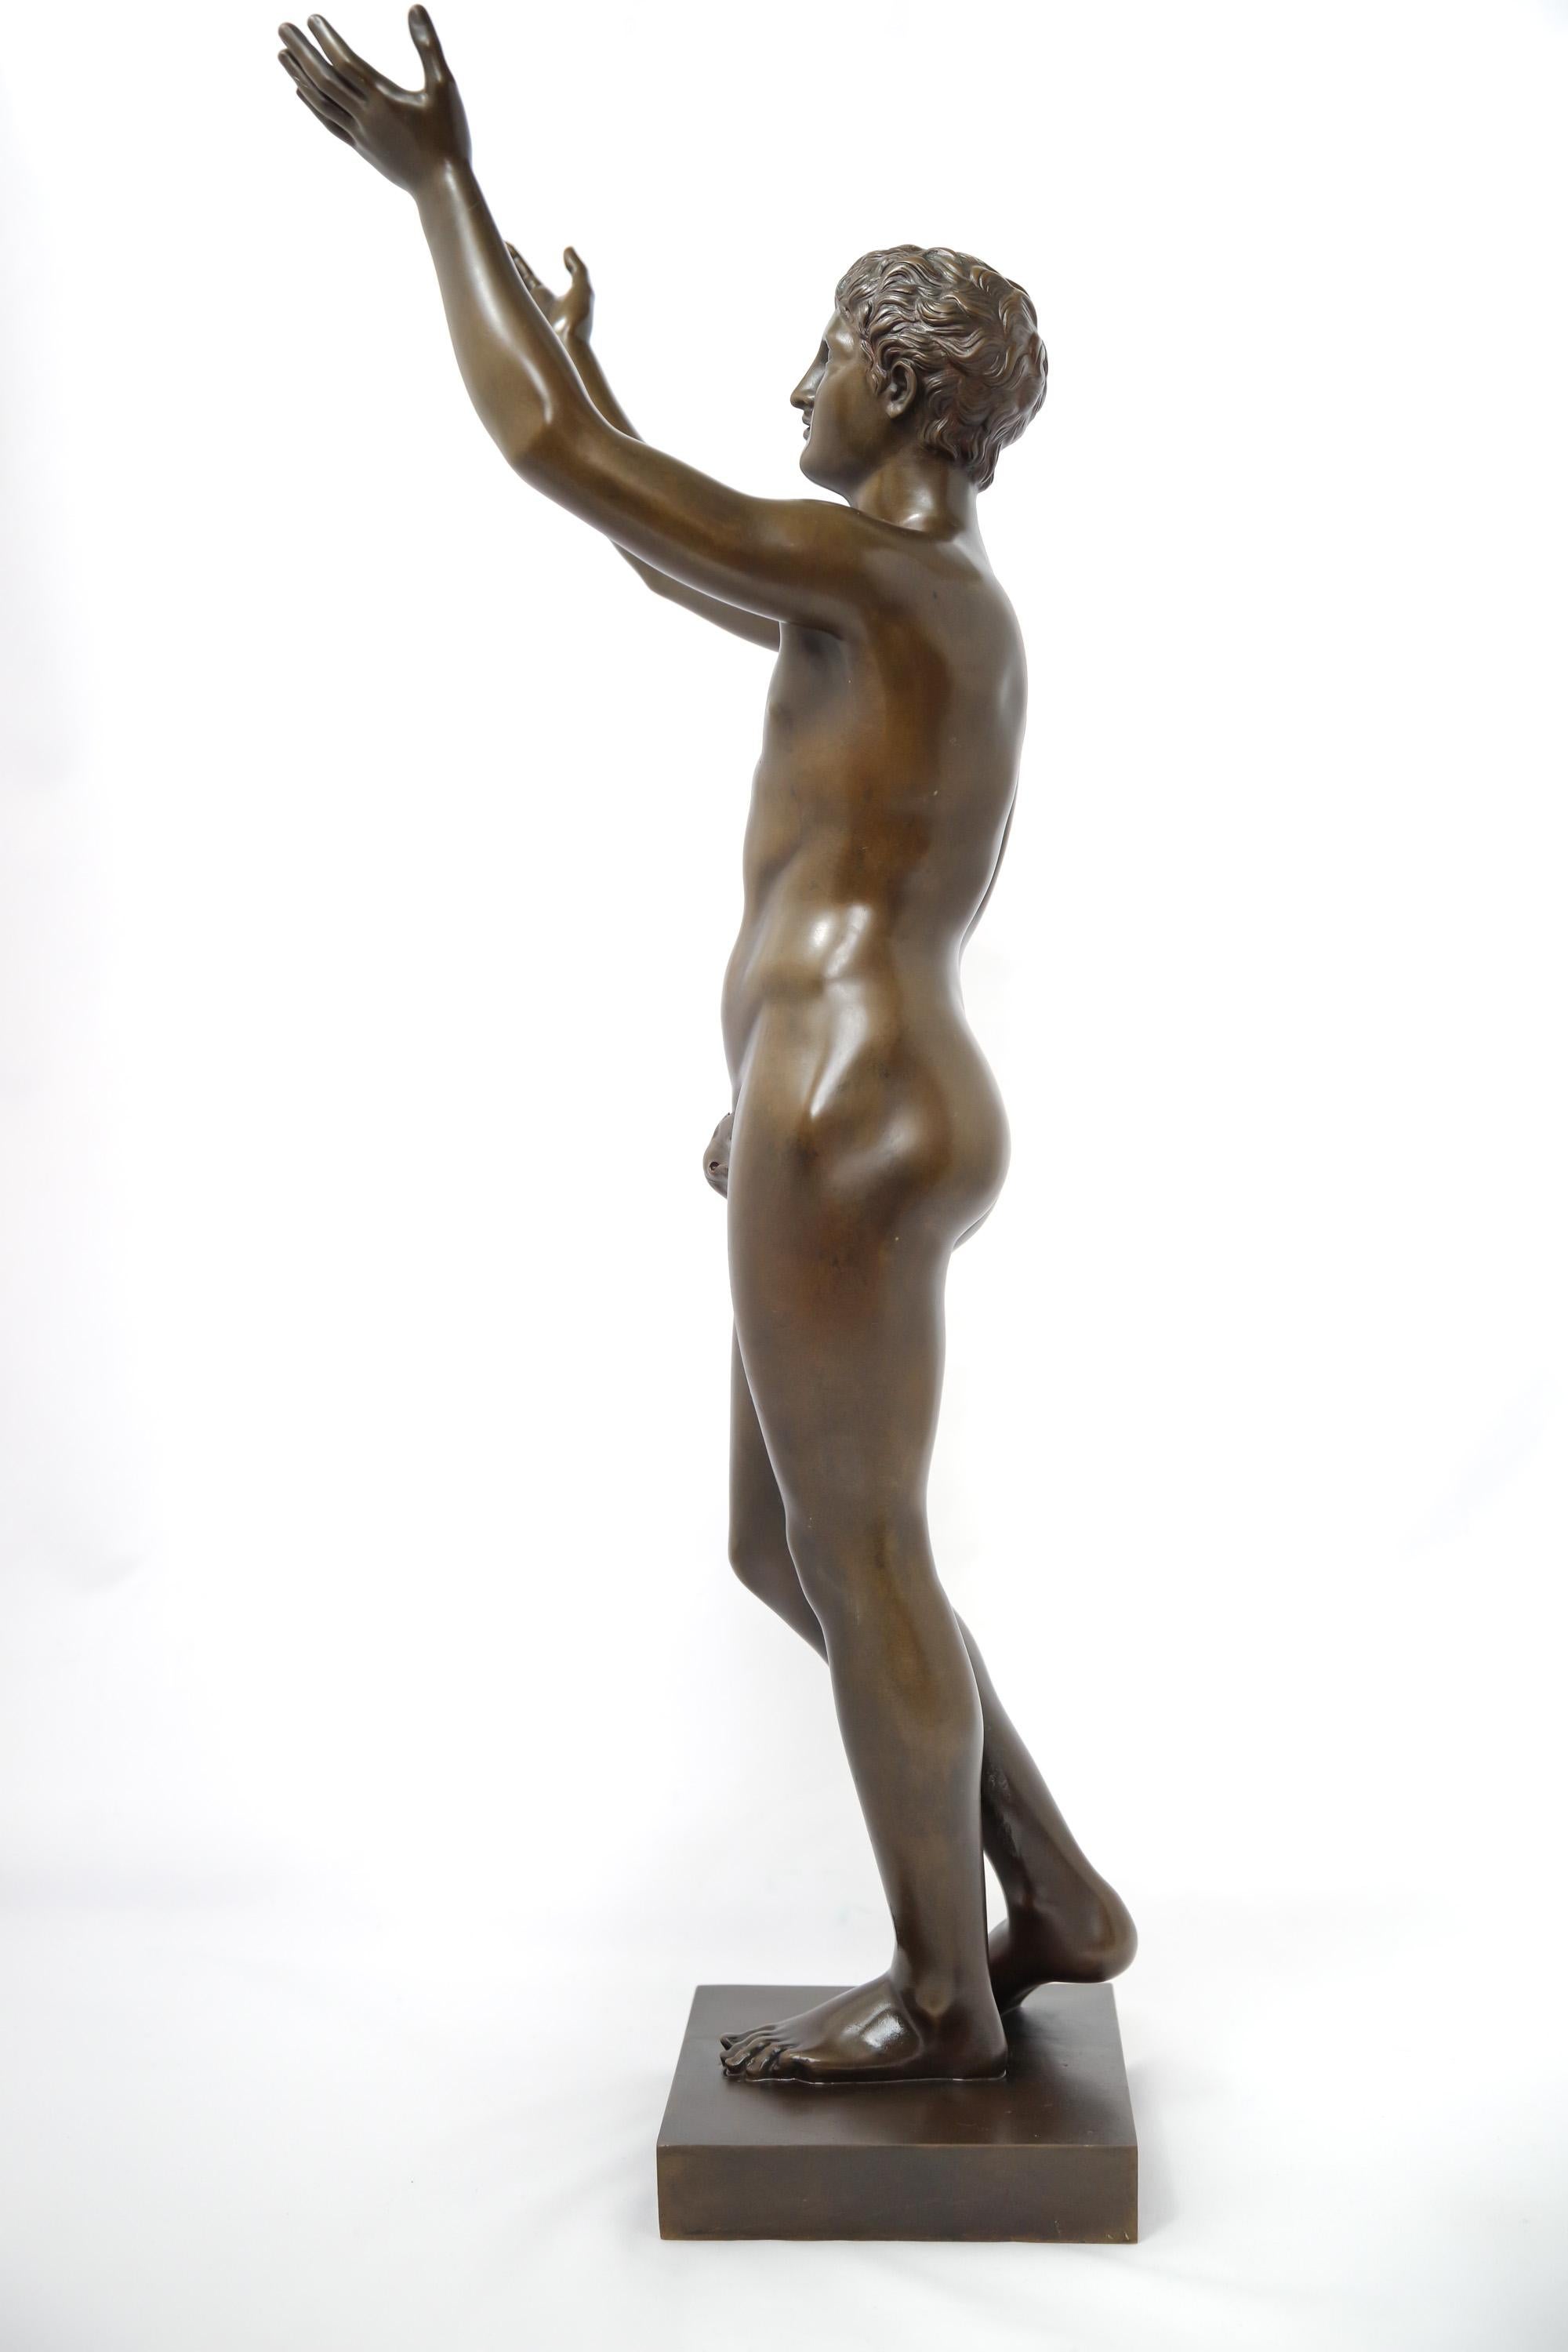 Figurine en bronze patiné du XIXe siècle représentant l'Adorante de Berlin, ou garçon priant. Il s'agit d'une réduction de l'original de l'époque hellénistique, actuellement conservé à l'Altes Museum de Berlin, réalisée par Lysippos ou son